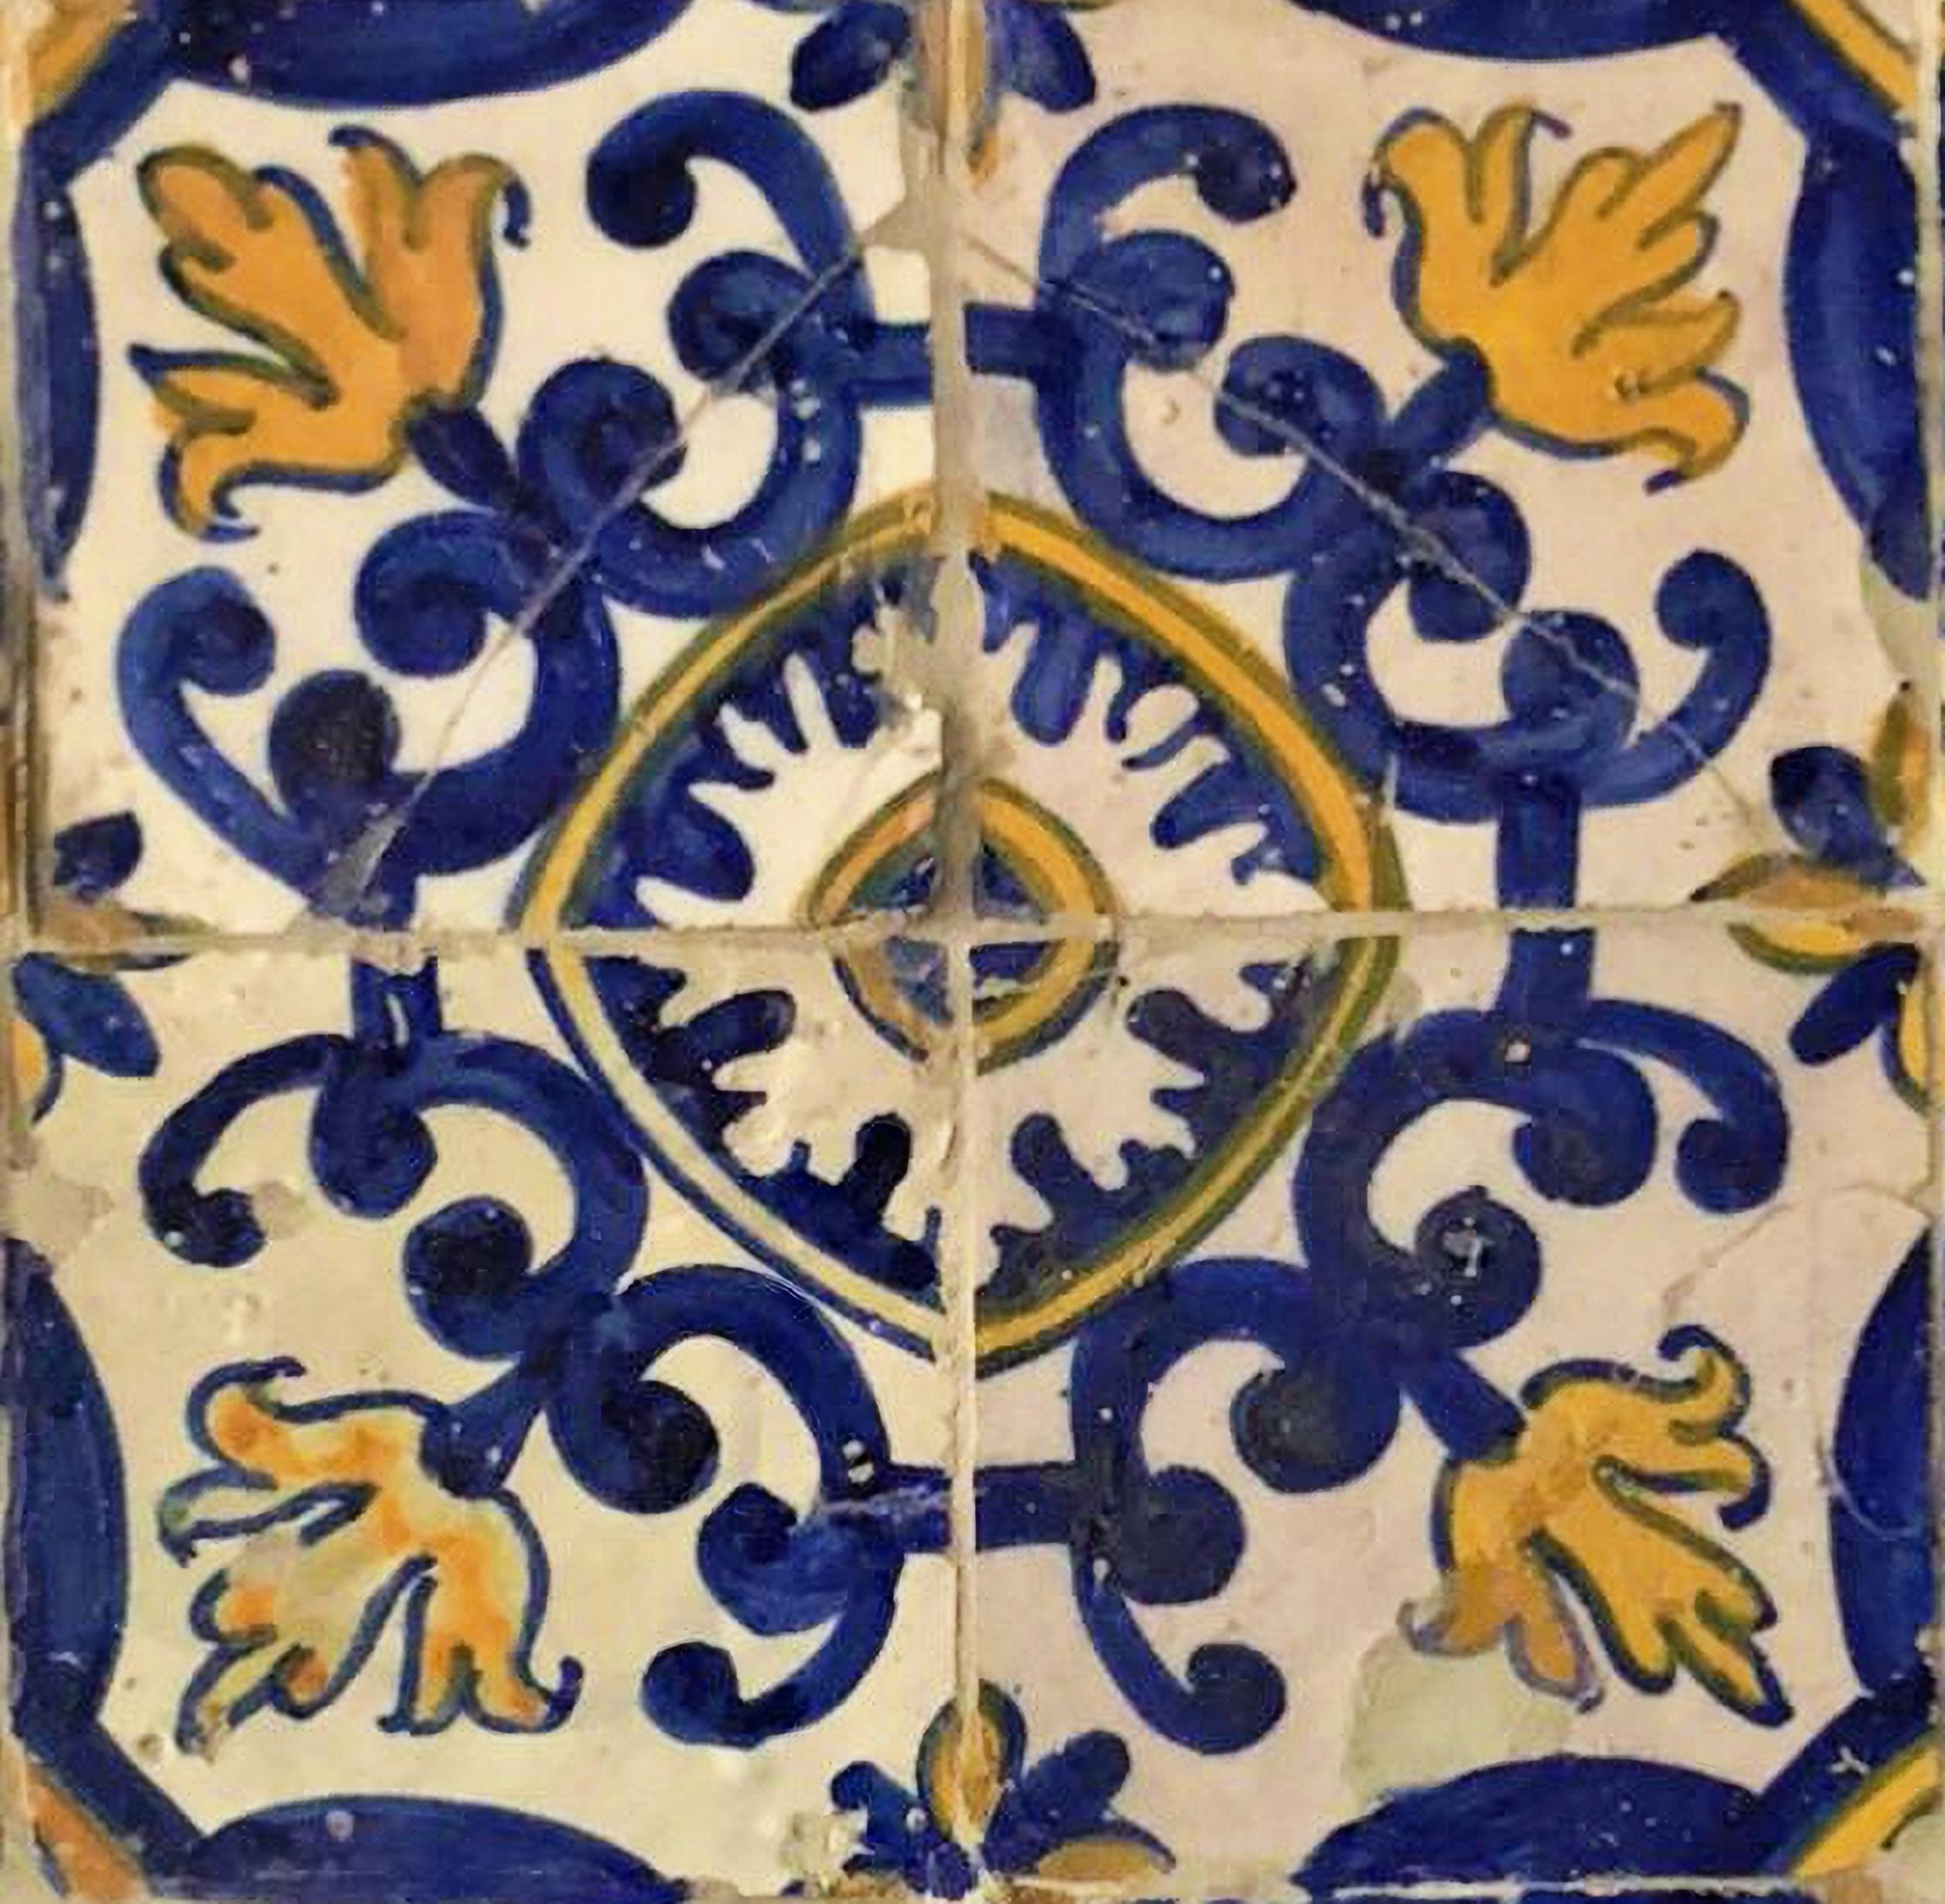 Portugiesische Fliesentafel aus dem 17.
wiederhergestellt
56cm x 56cm
14cm x 14cm Fliesen

Mit Echtheits- und Ausfuhrzertifikat, ausgestellt von der Generaldirektion für das portugiesische Kulturerbe, der einzigen offiziellen Stelle für die